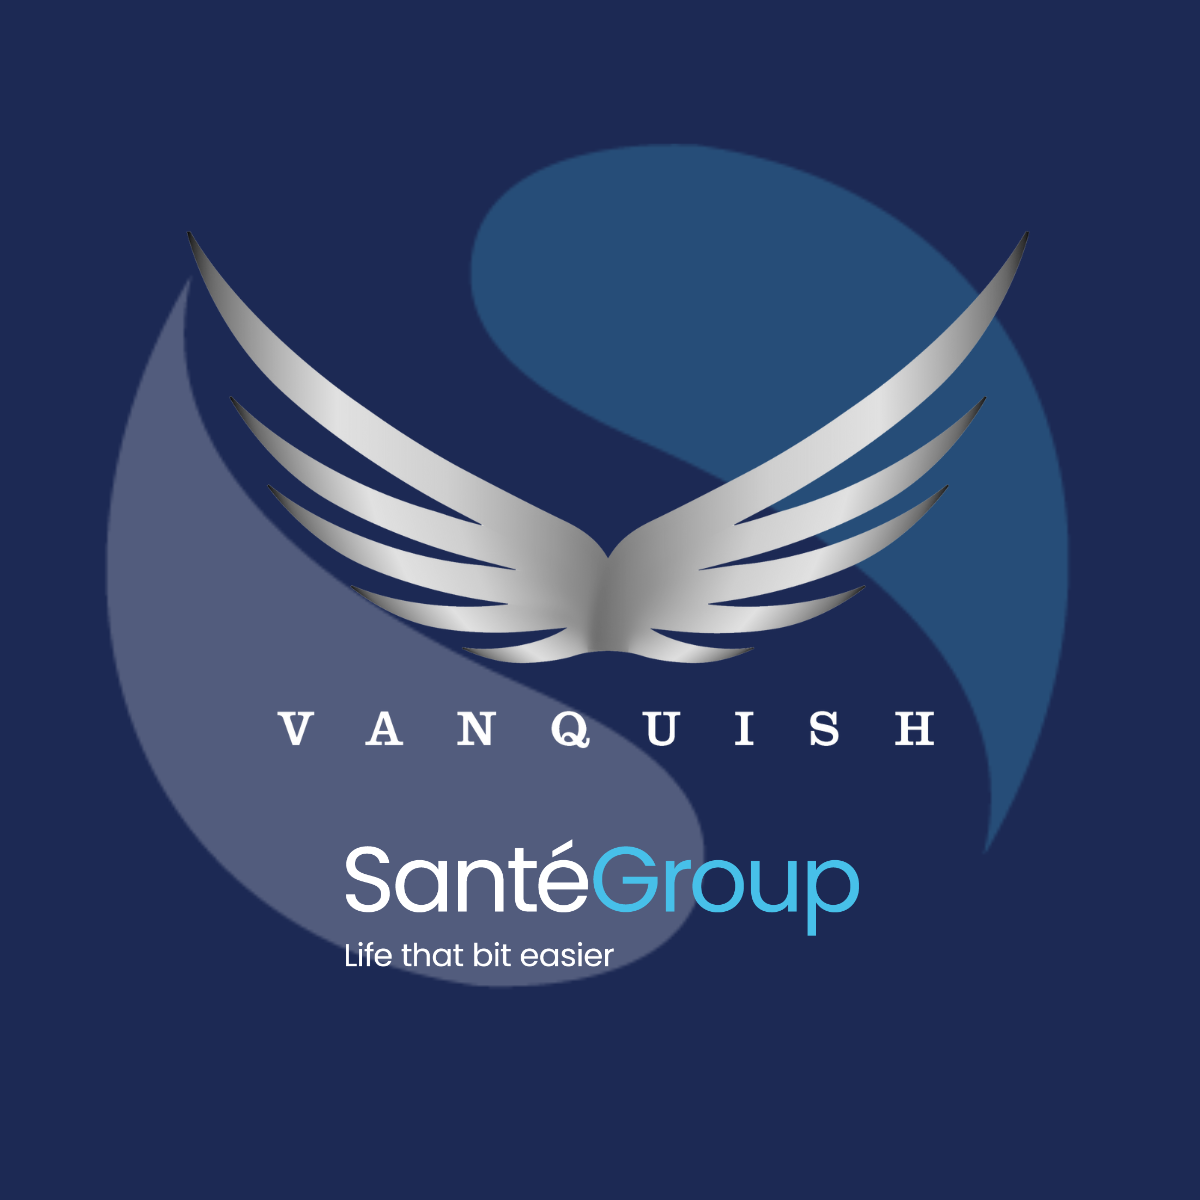 Santé Group Announces Strategic Partnership with Vanquish Business Services